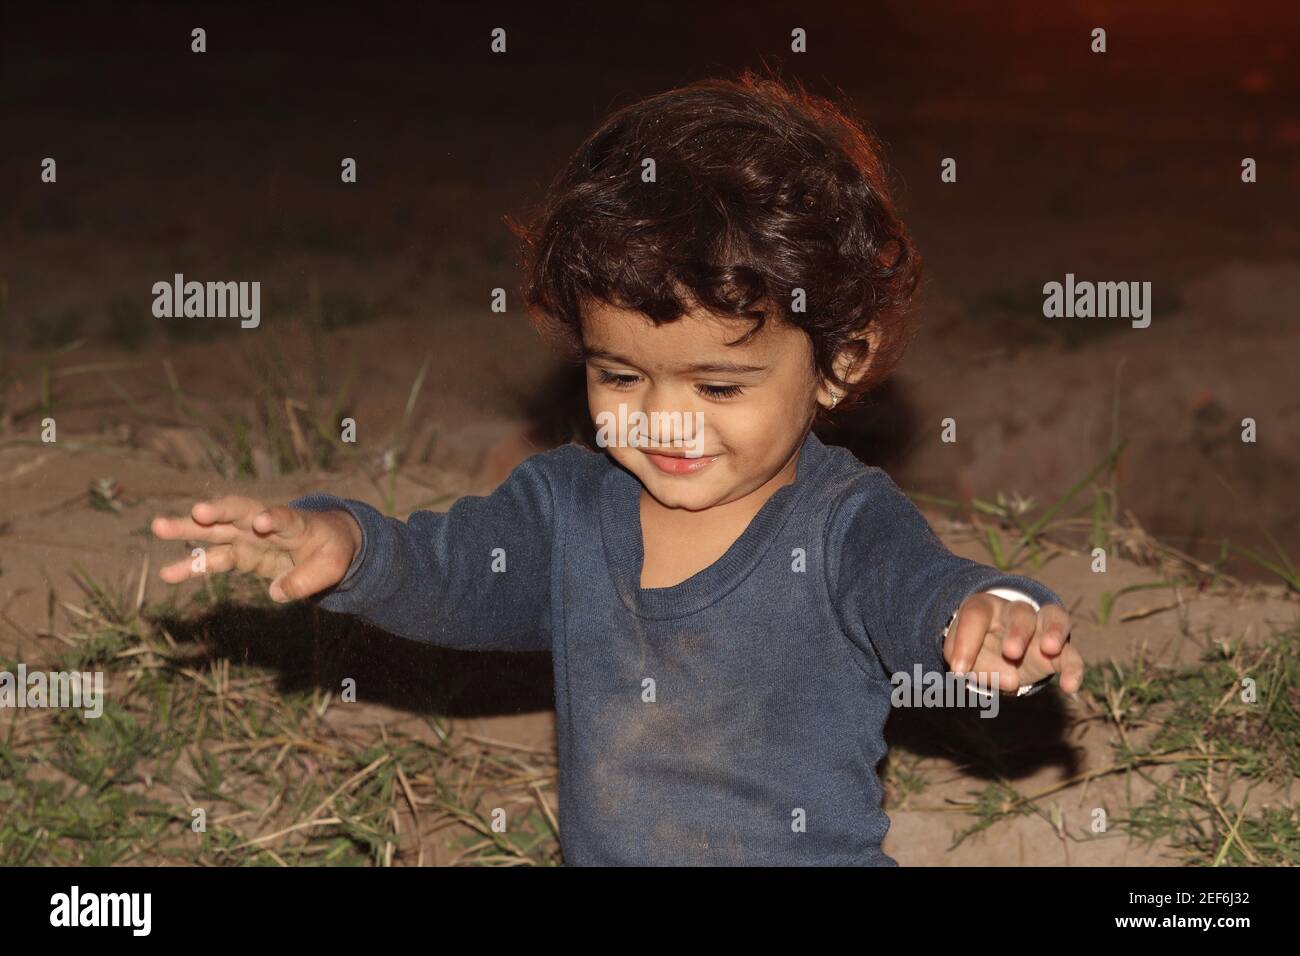 Ein kleines indisches Kind, das nach der Dämmerung im Garten spielt.schöne Kinder Indiens, Kindheit, das lächelnde Gesicht eines kleinen Kindes, die Zukunft Indiens, tod Stockfoto